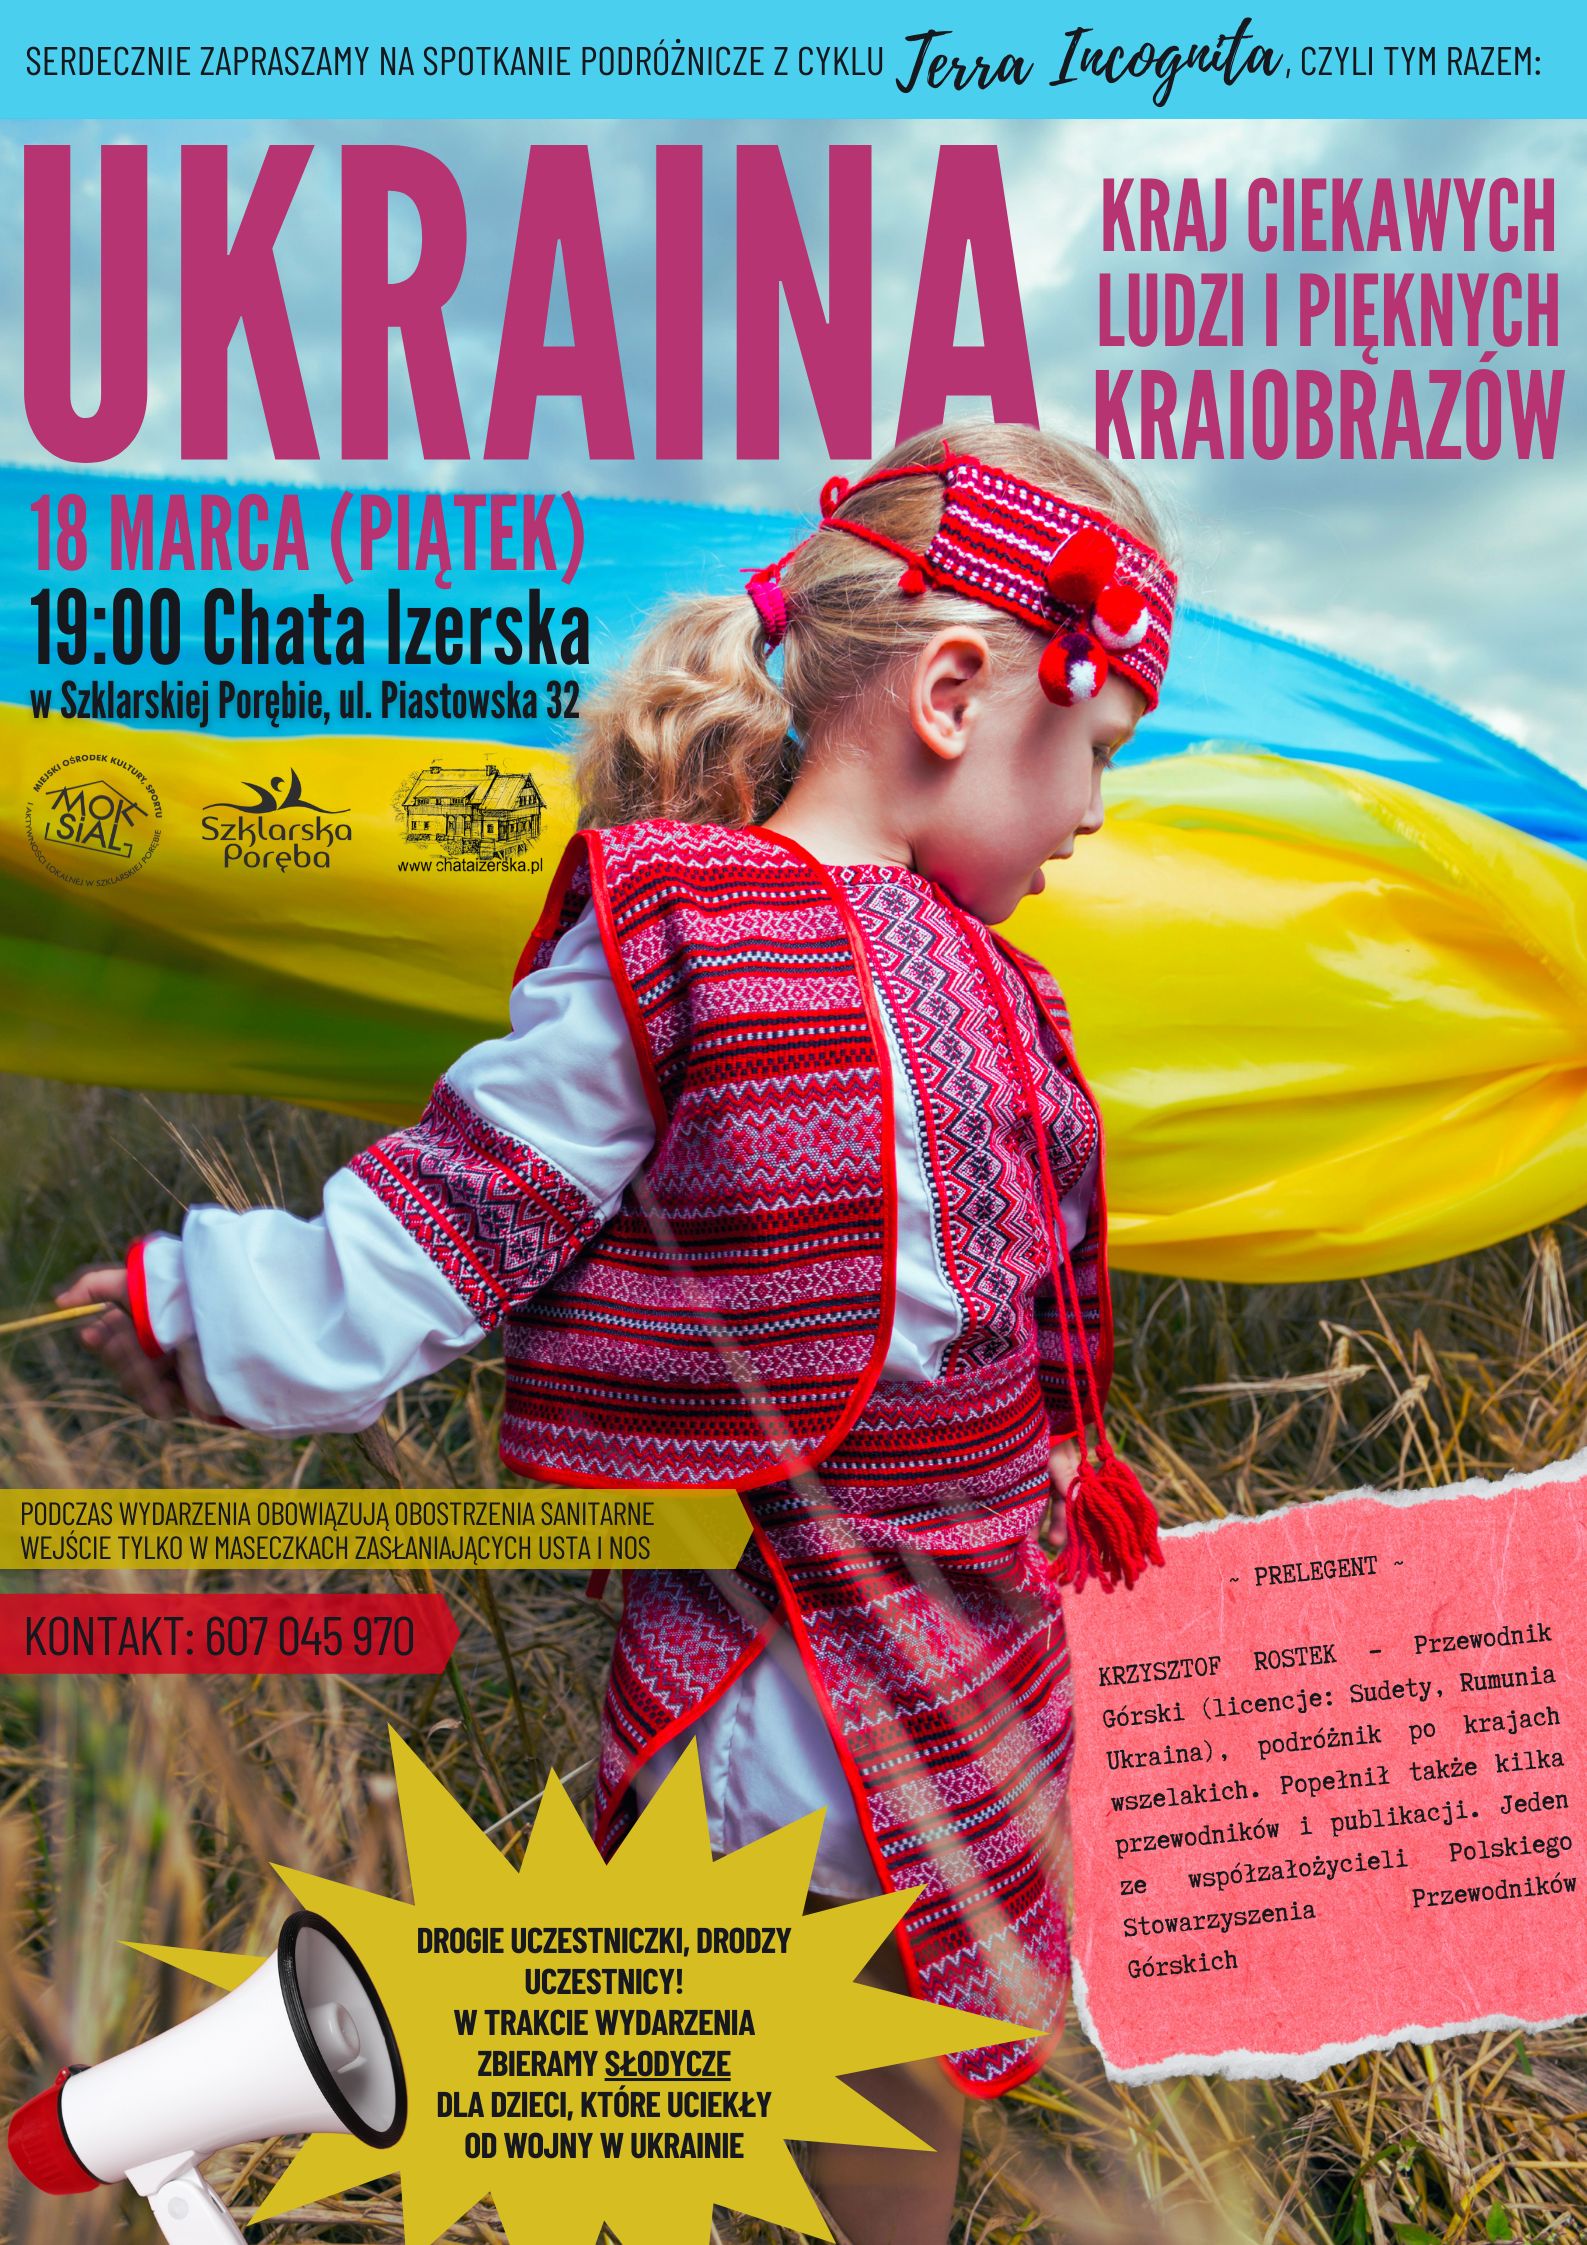 Spotkanie z cyklu Terraz Incognita 18 macra 2022 roku poświęcone Ukrainie